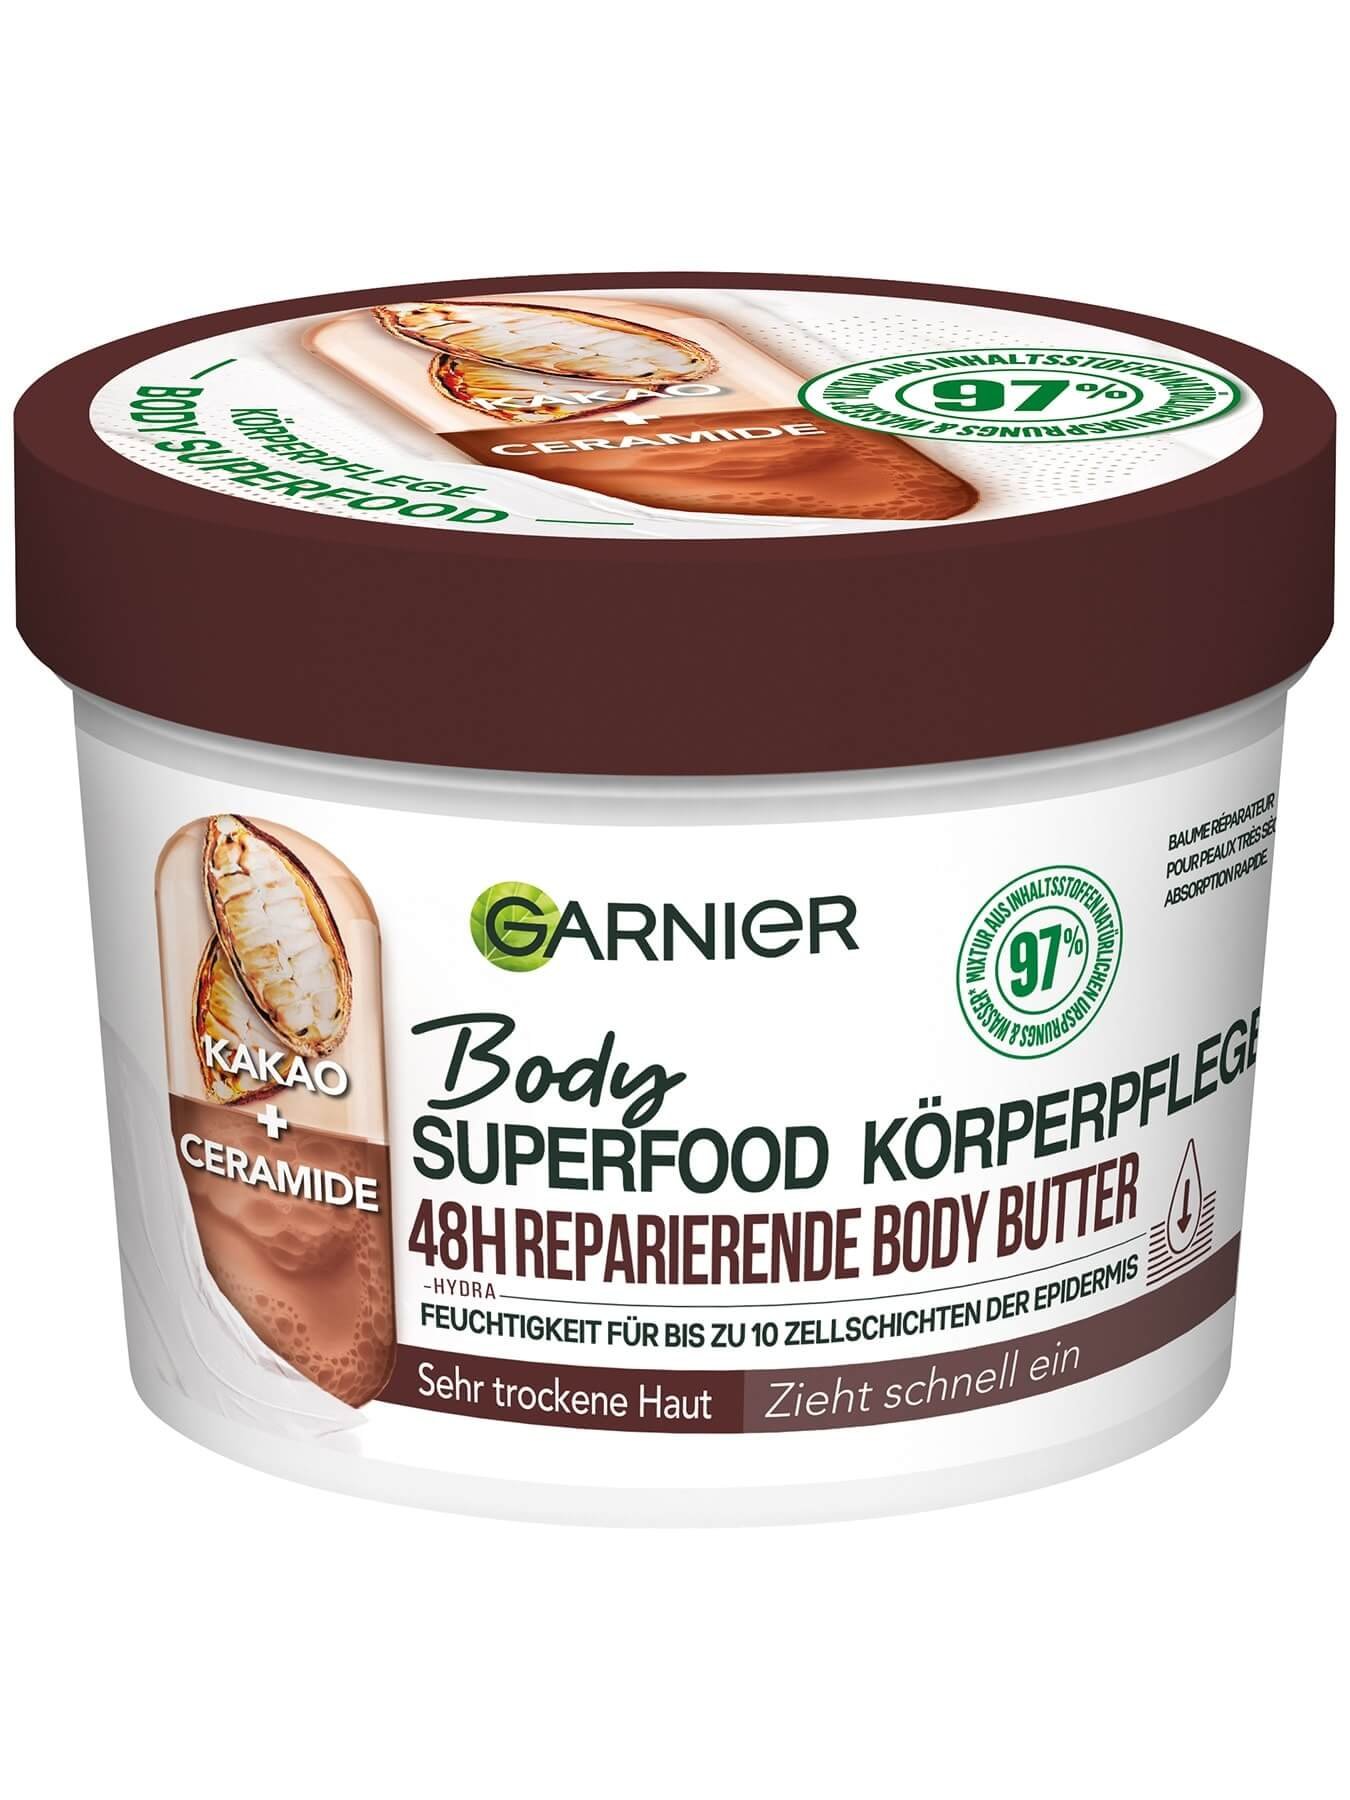 Body Superfood Körperpflege 48h reparierende Body Butter Kakao  - Produktabbildung